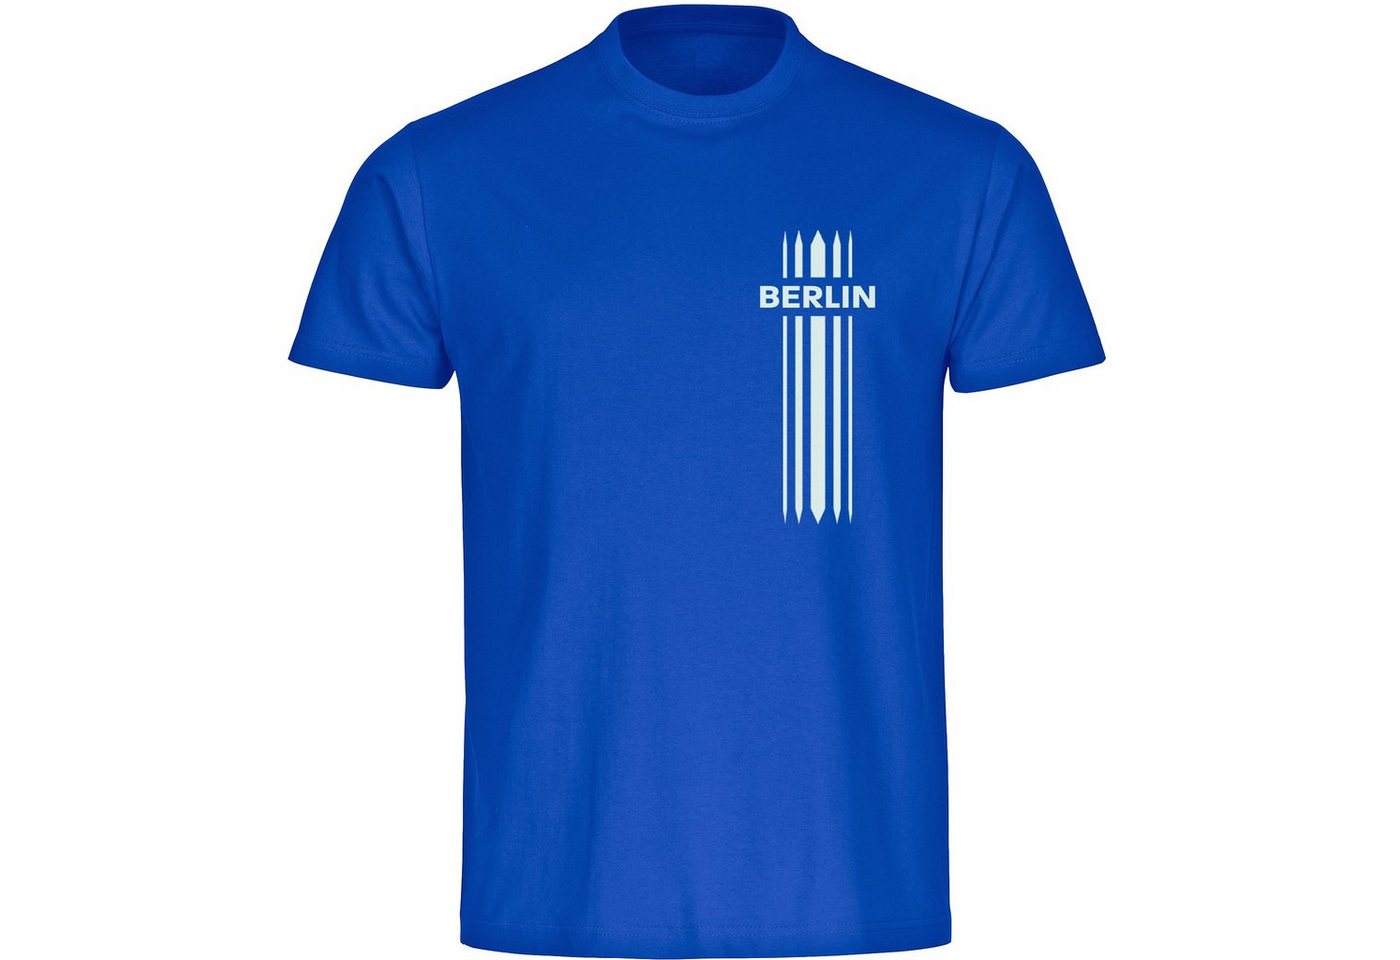 multifanshop T-Shirt Herren Berlin blau - Streifen - Männer von multifanshop